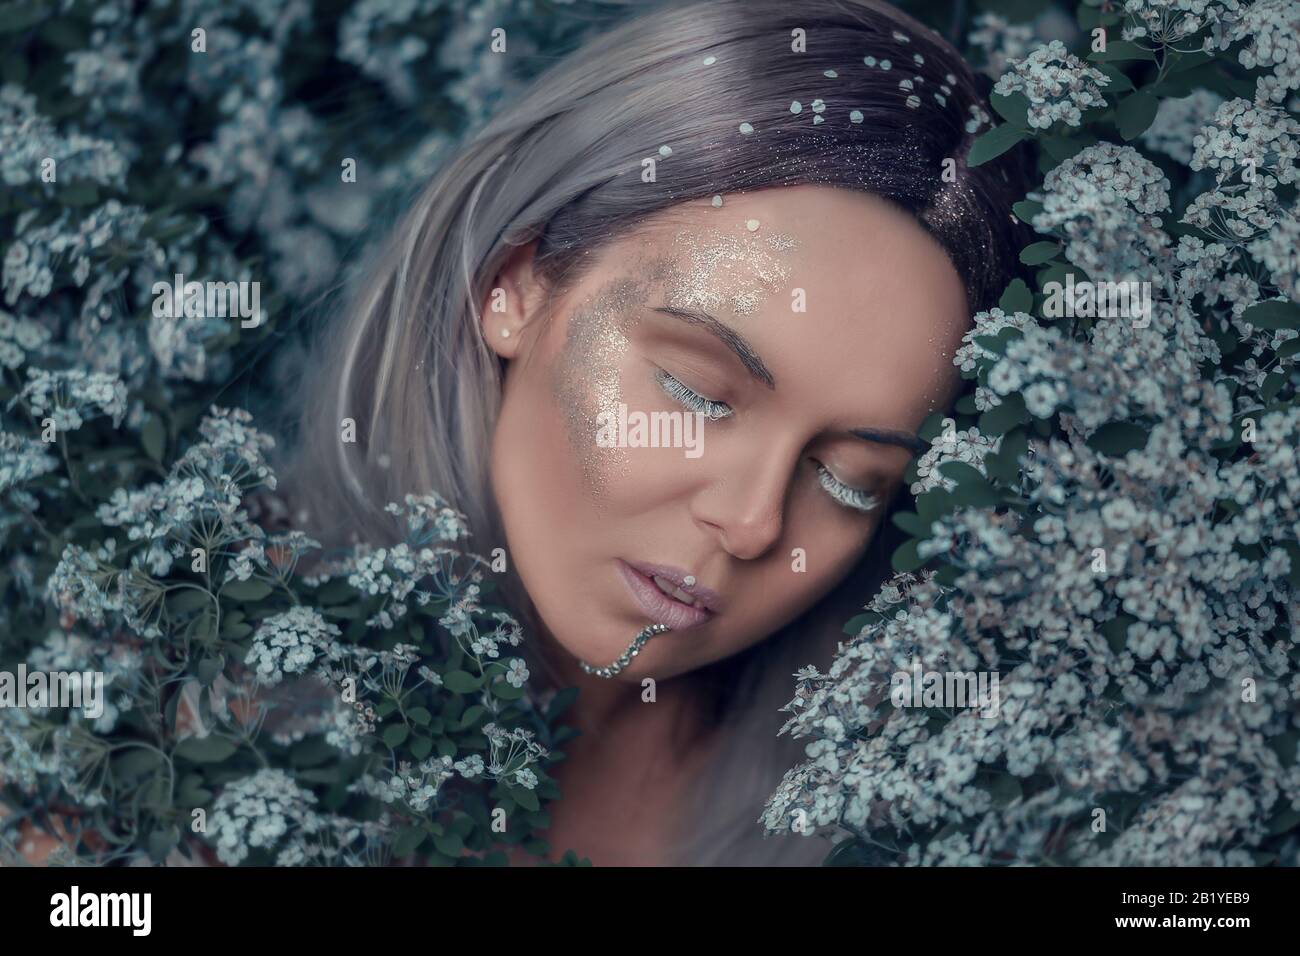 Cuento de hadas bosque ninfa, hermosa mujer sexy con el pelo blanco y gris en el jardín de primavera, dormir en el árbol en flor, estilo de moda de ensueño vintage Foto de stock